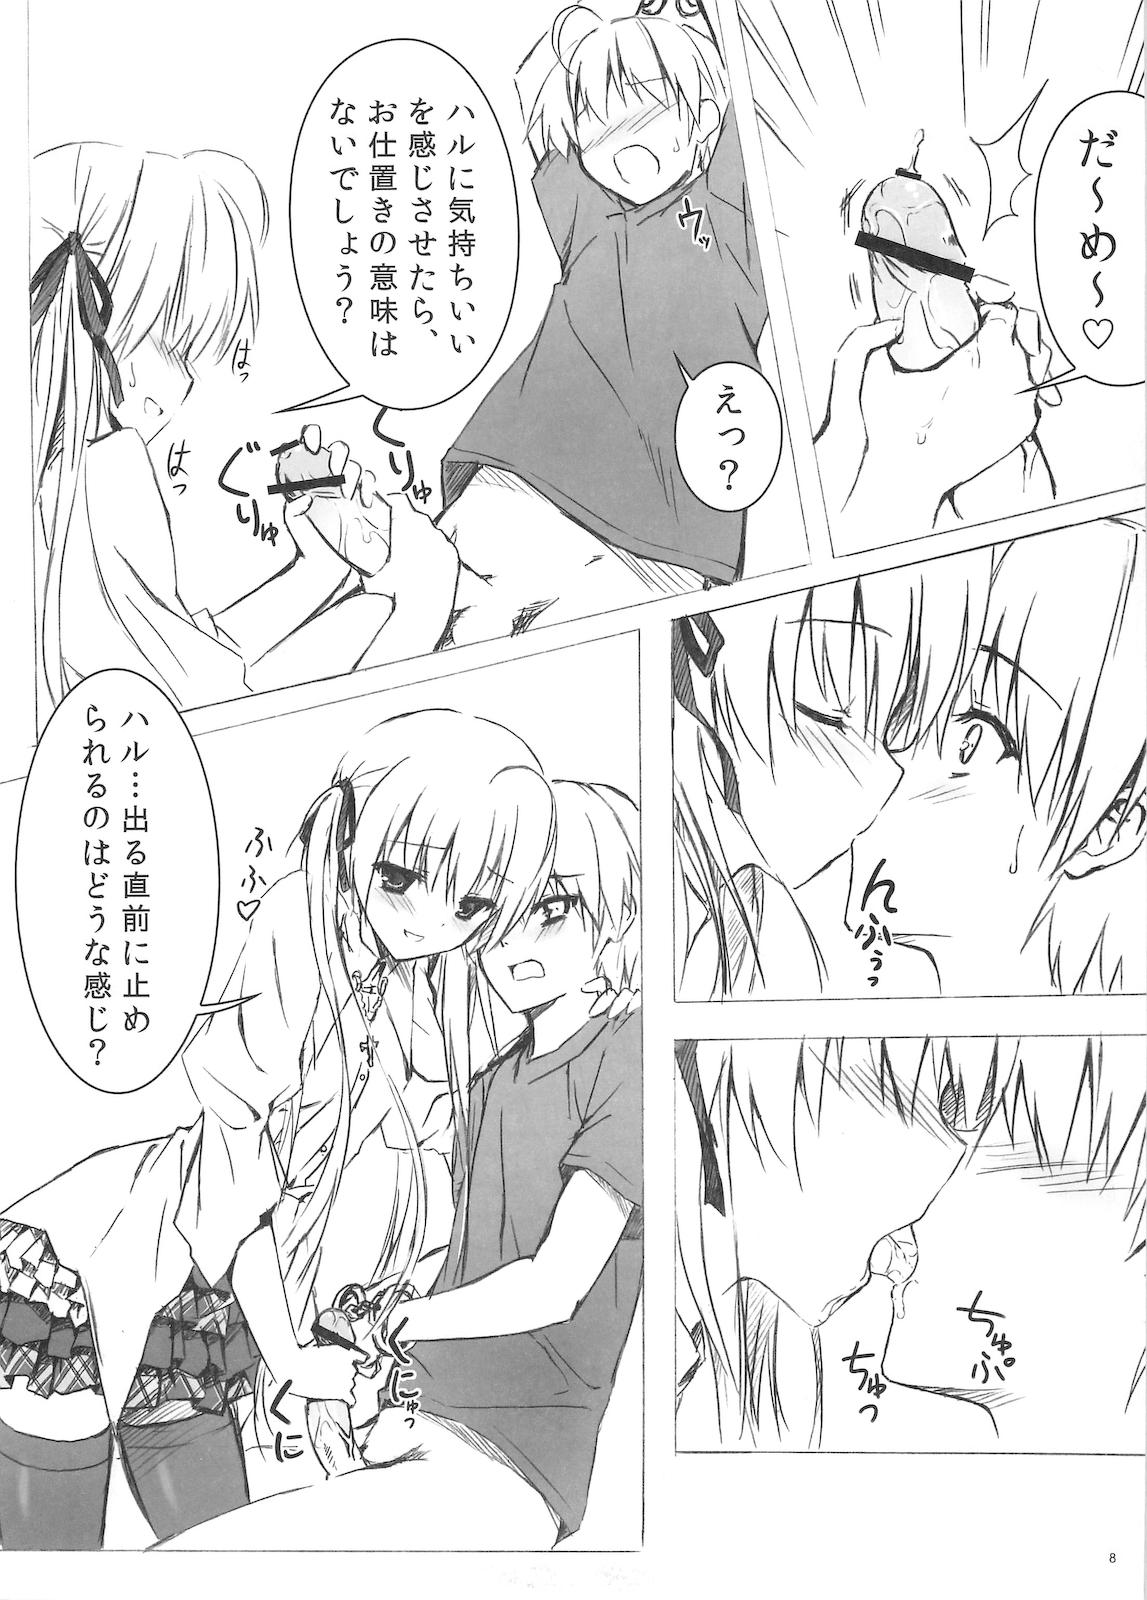 Lezdom Sora no Omocha - Yosuga no sora Fist - Page 8